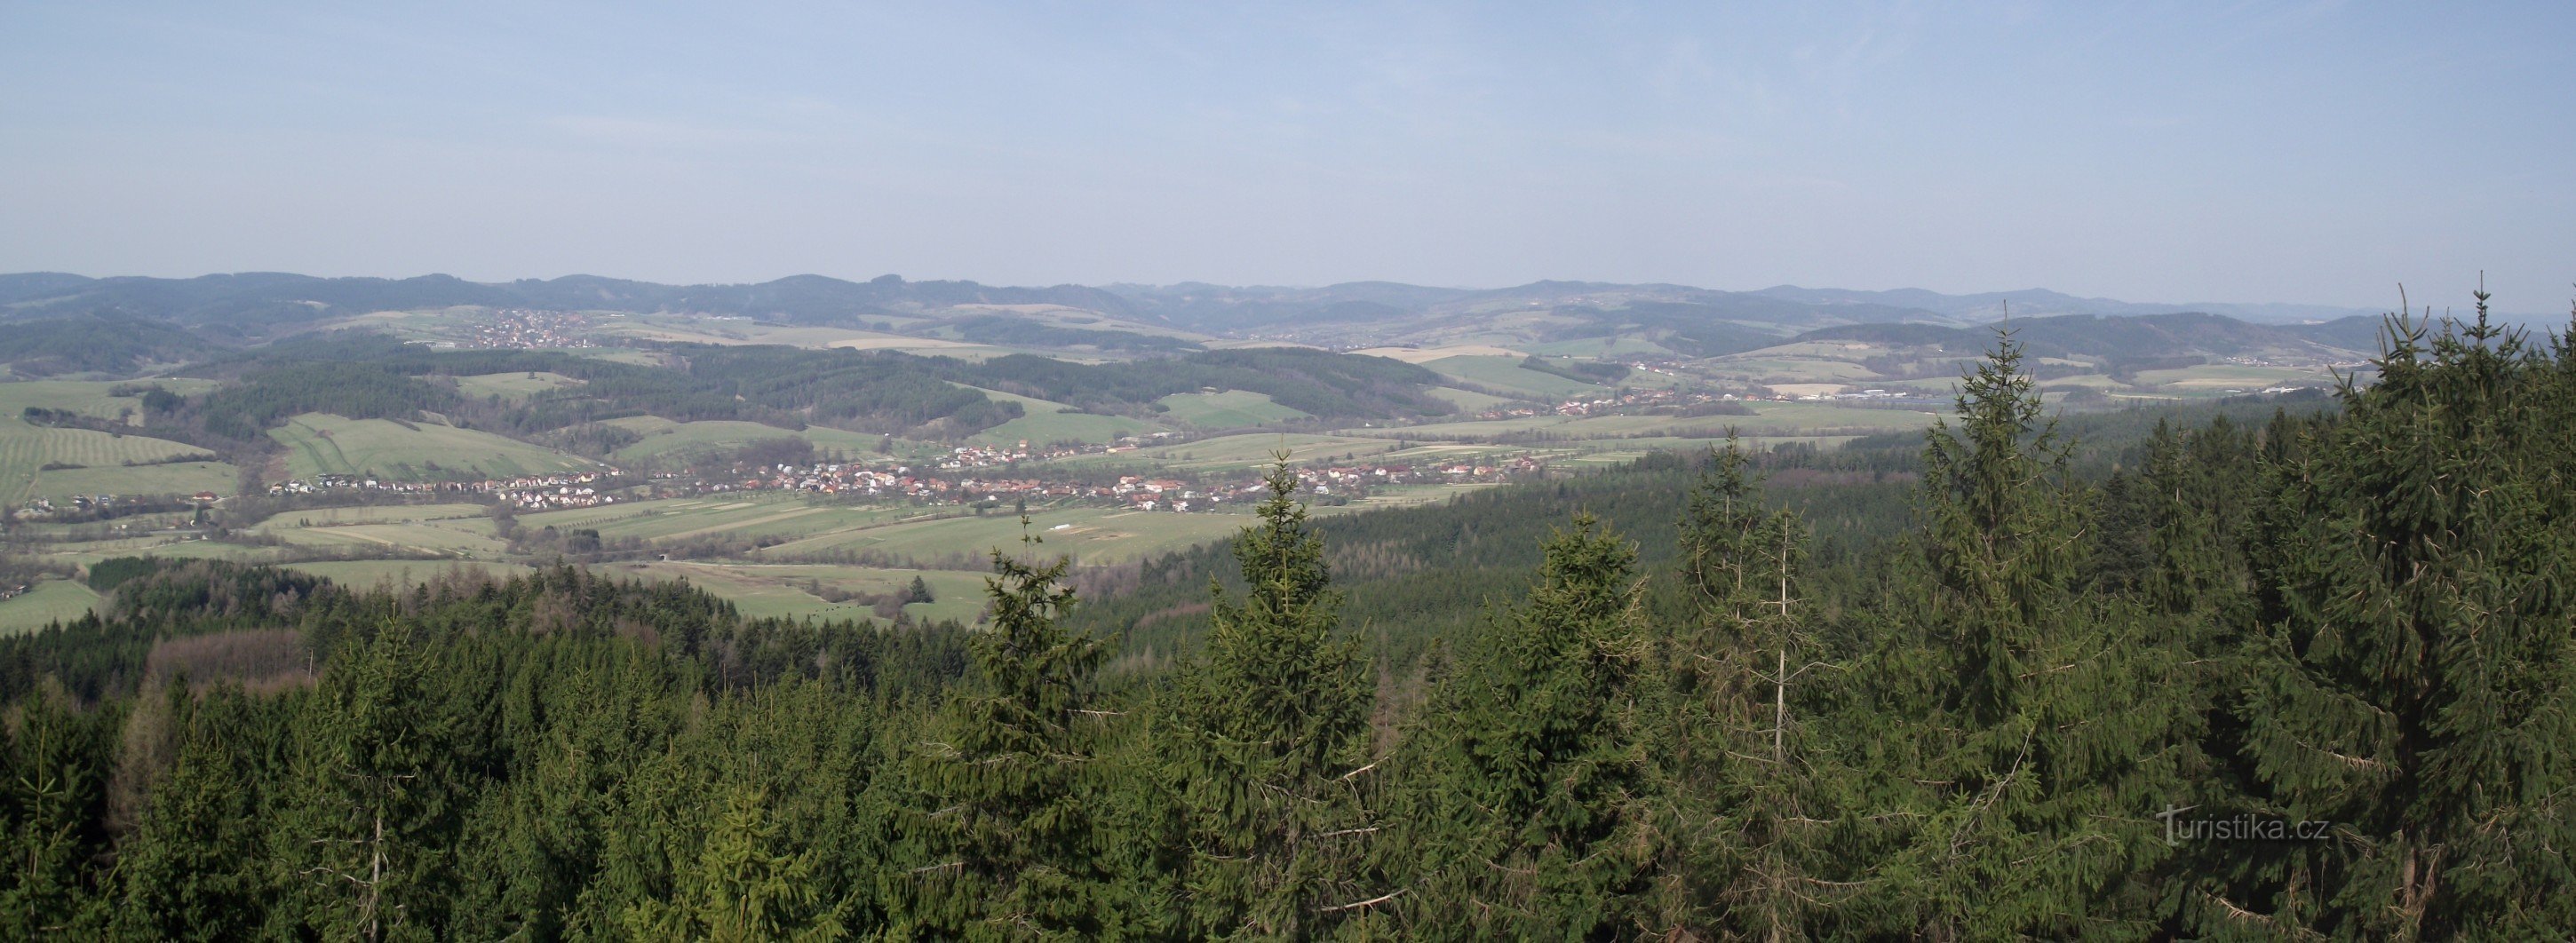 ワラキア南部の展望塔とヴィゾヴィッケの丘からの眺め